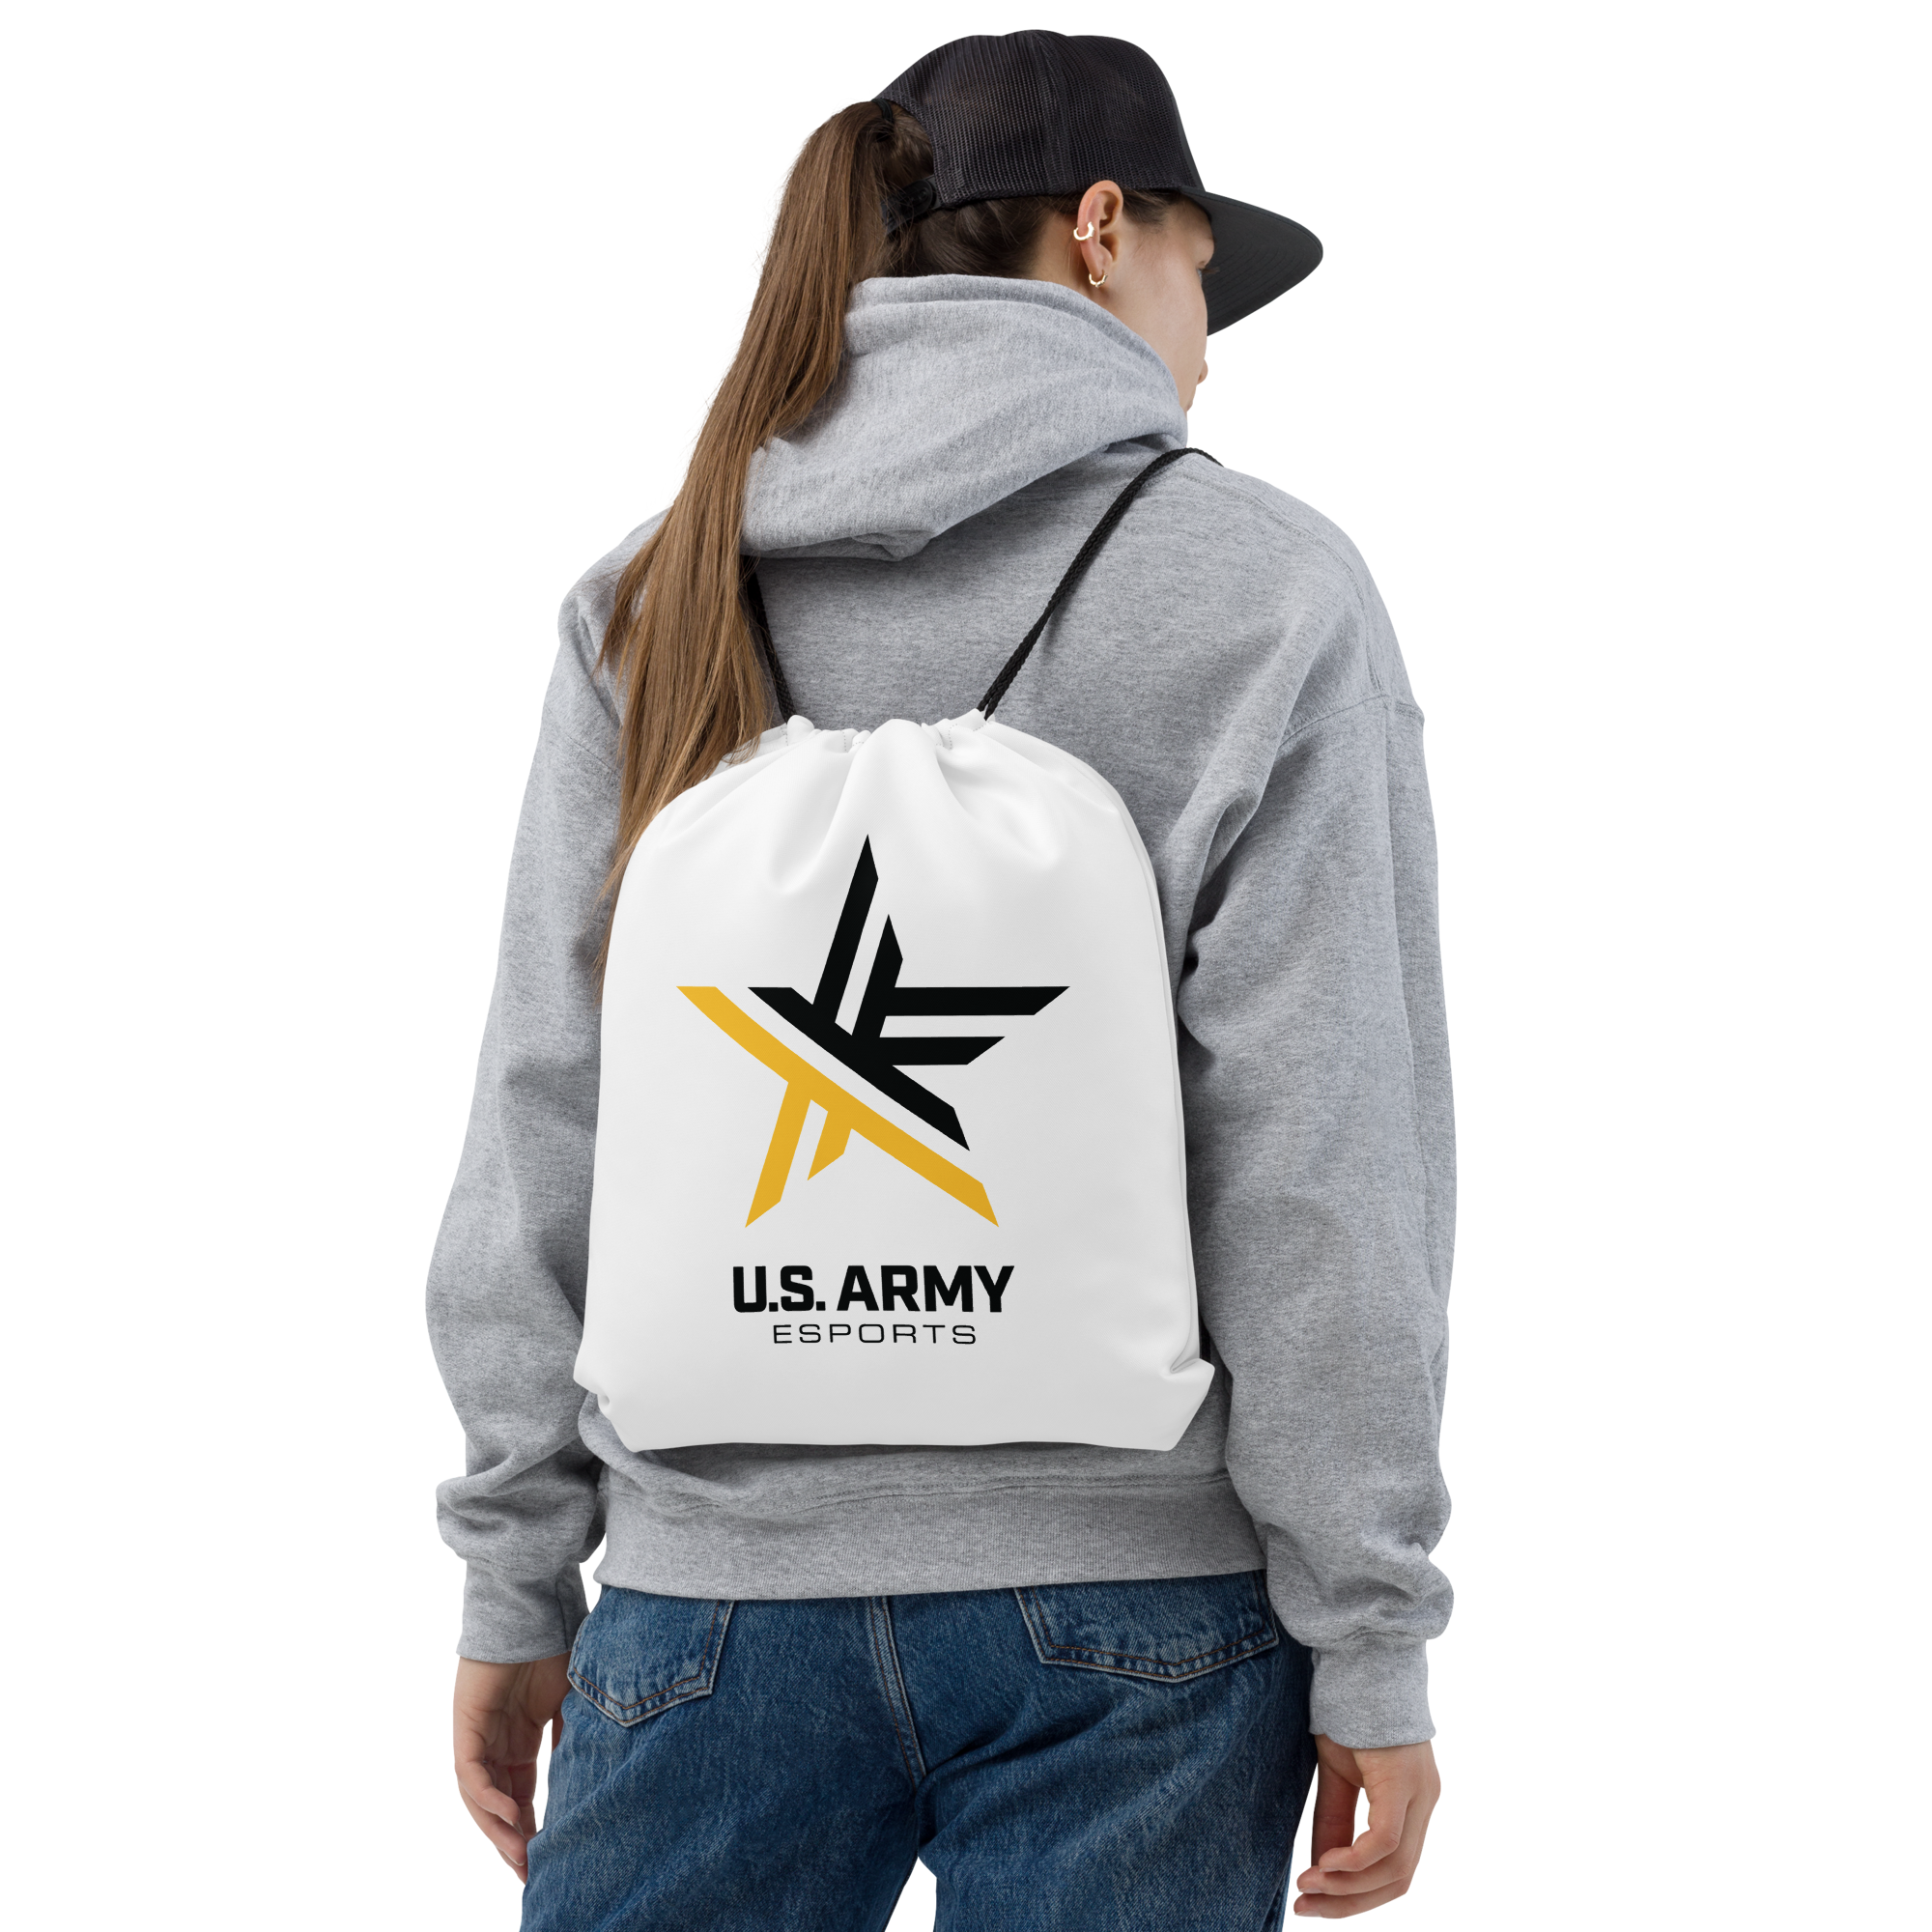 U.S. Army Esports | On Demand | Dye Sublimated Drawstring bag